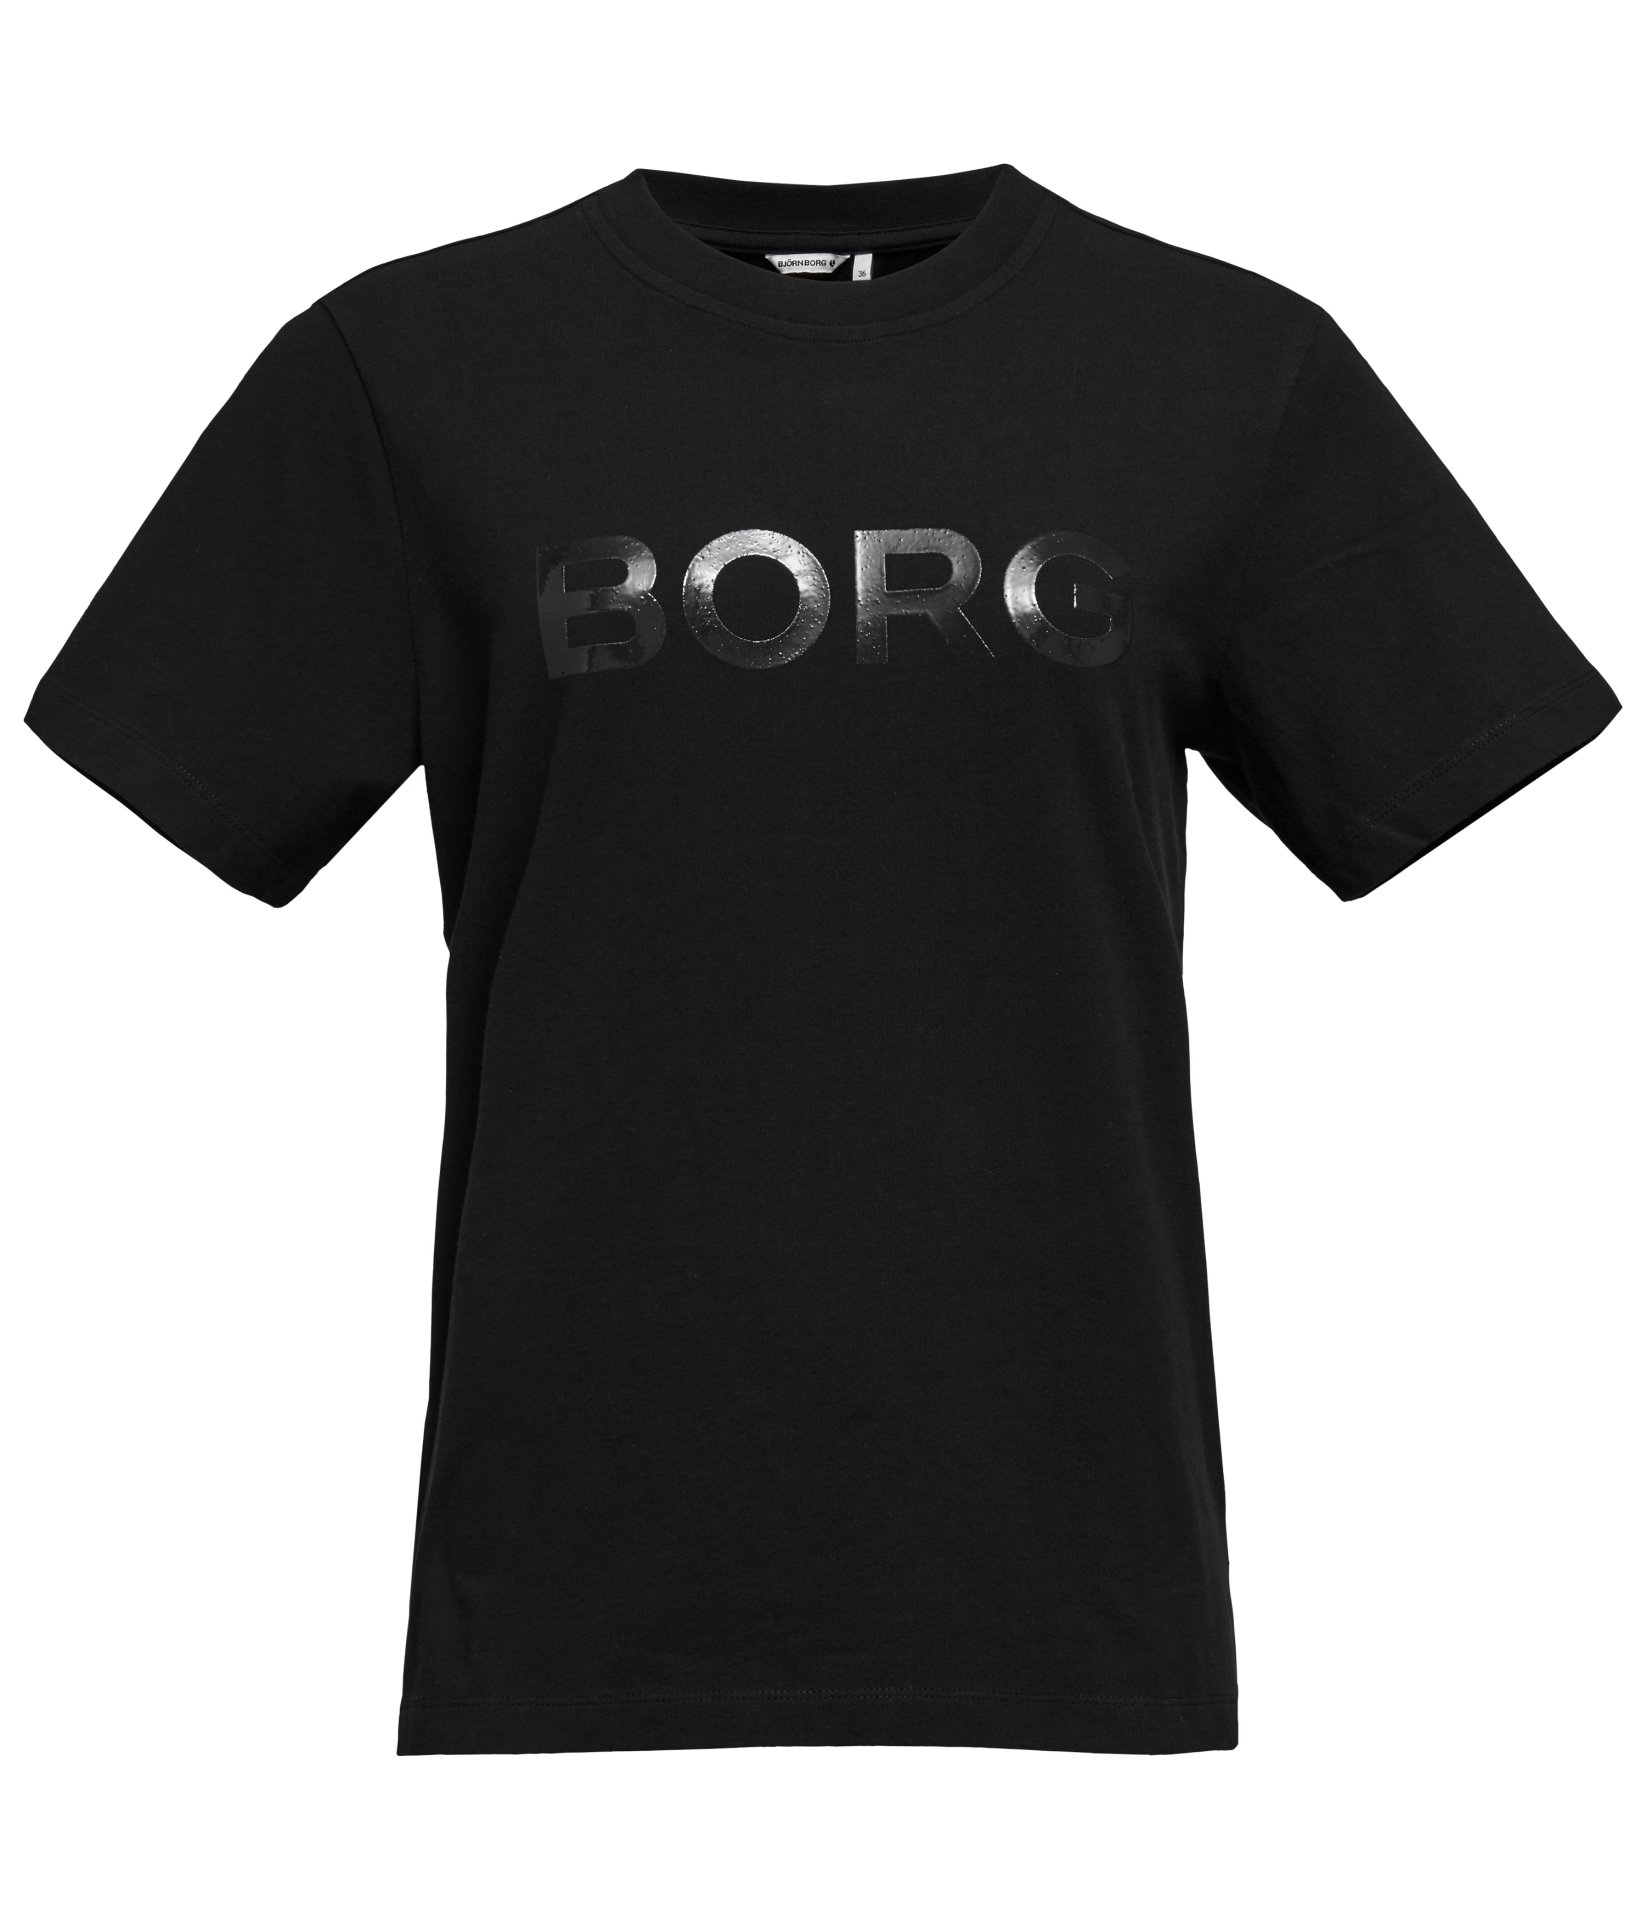 Γυναικεία/Ρούχα/Αθλητικά/T-shirt-Τοπ BJORN BORG - Γυναικειο αθλητικό t-shirt BJORN BORG μαύρο